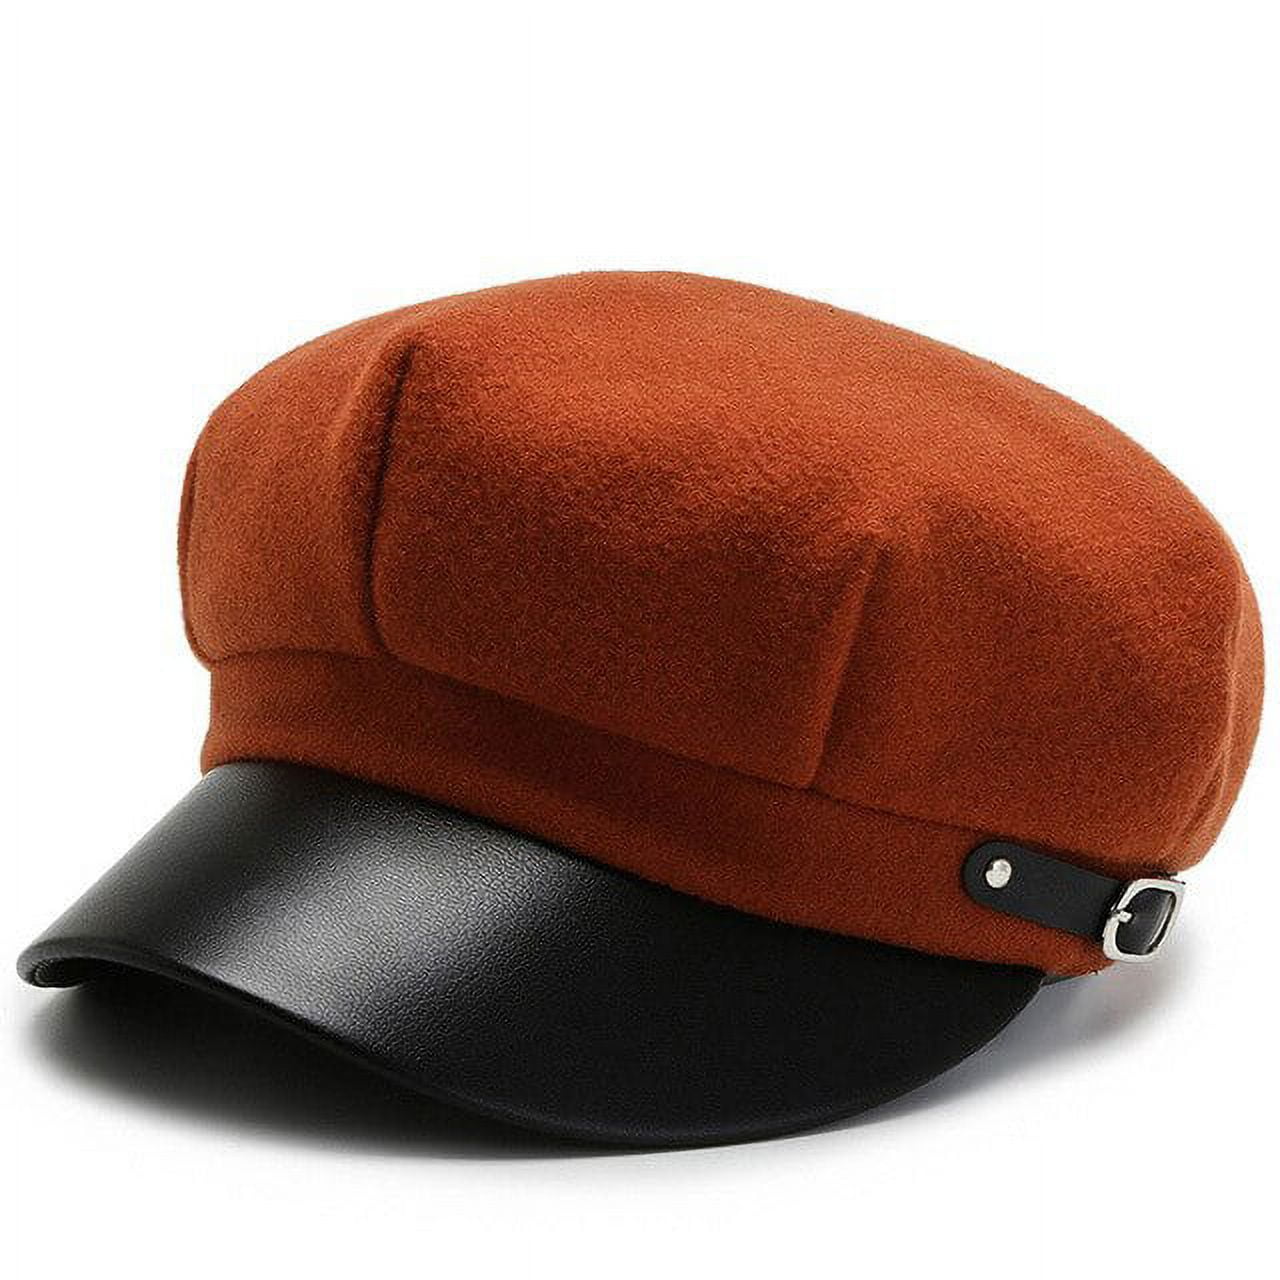 Hats Curve Shaper Tool / Hat Bill Bender for Caps / New Era